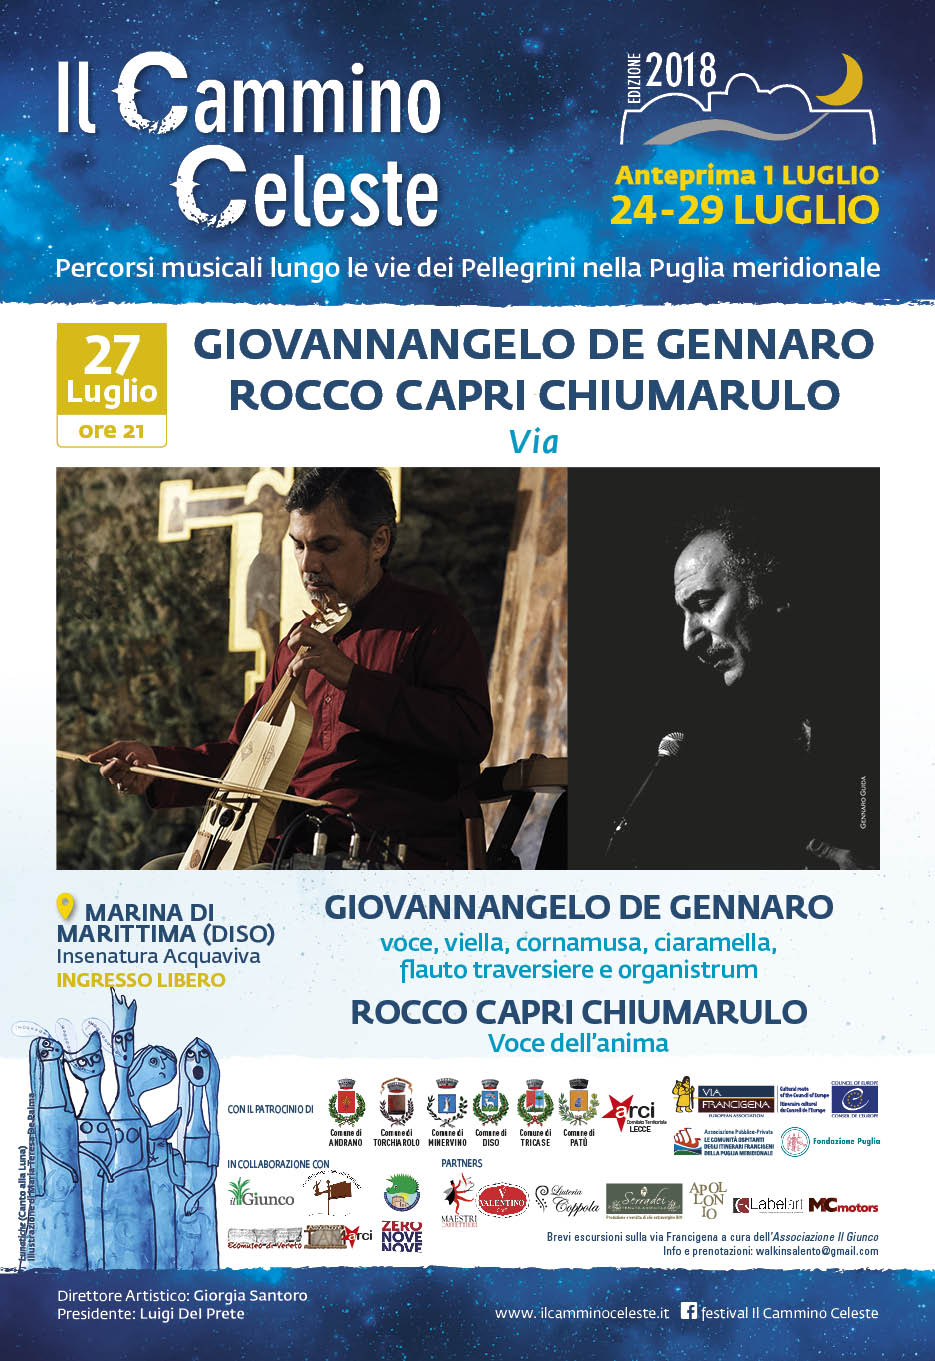 Foto 4 - Giovannangelo De Gennaro e Rocco Capri Chiumarulo protagonisti del Festival 